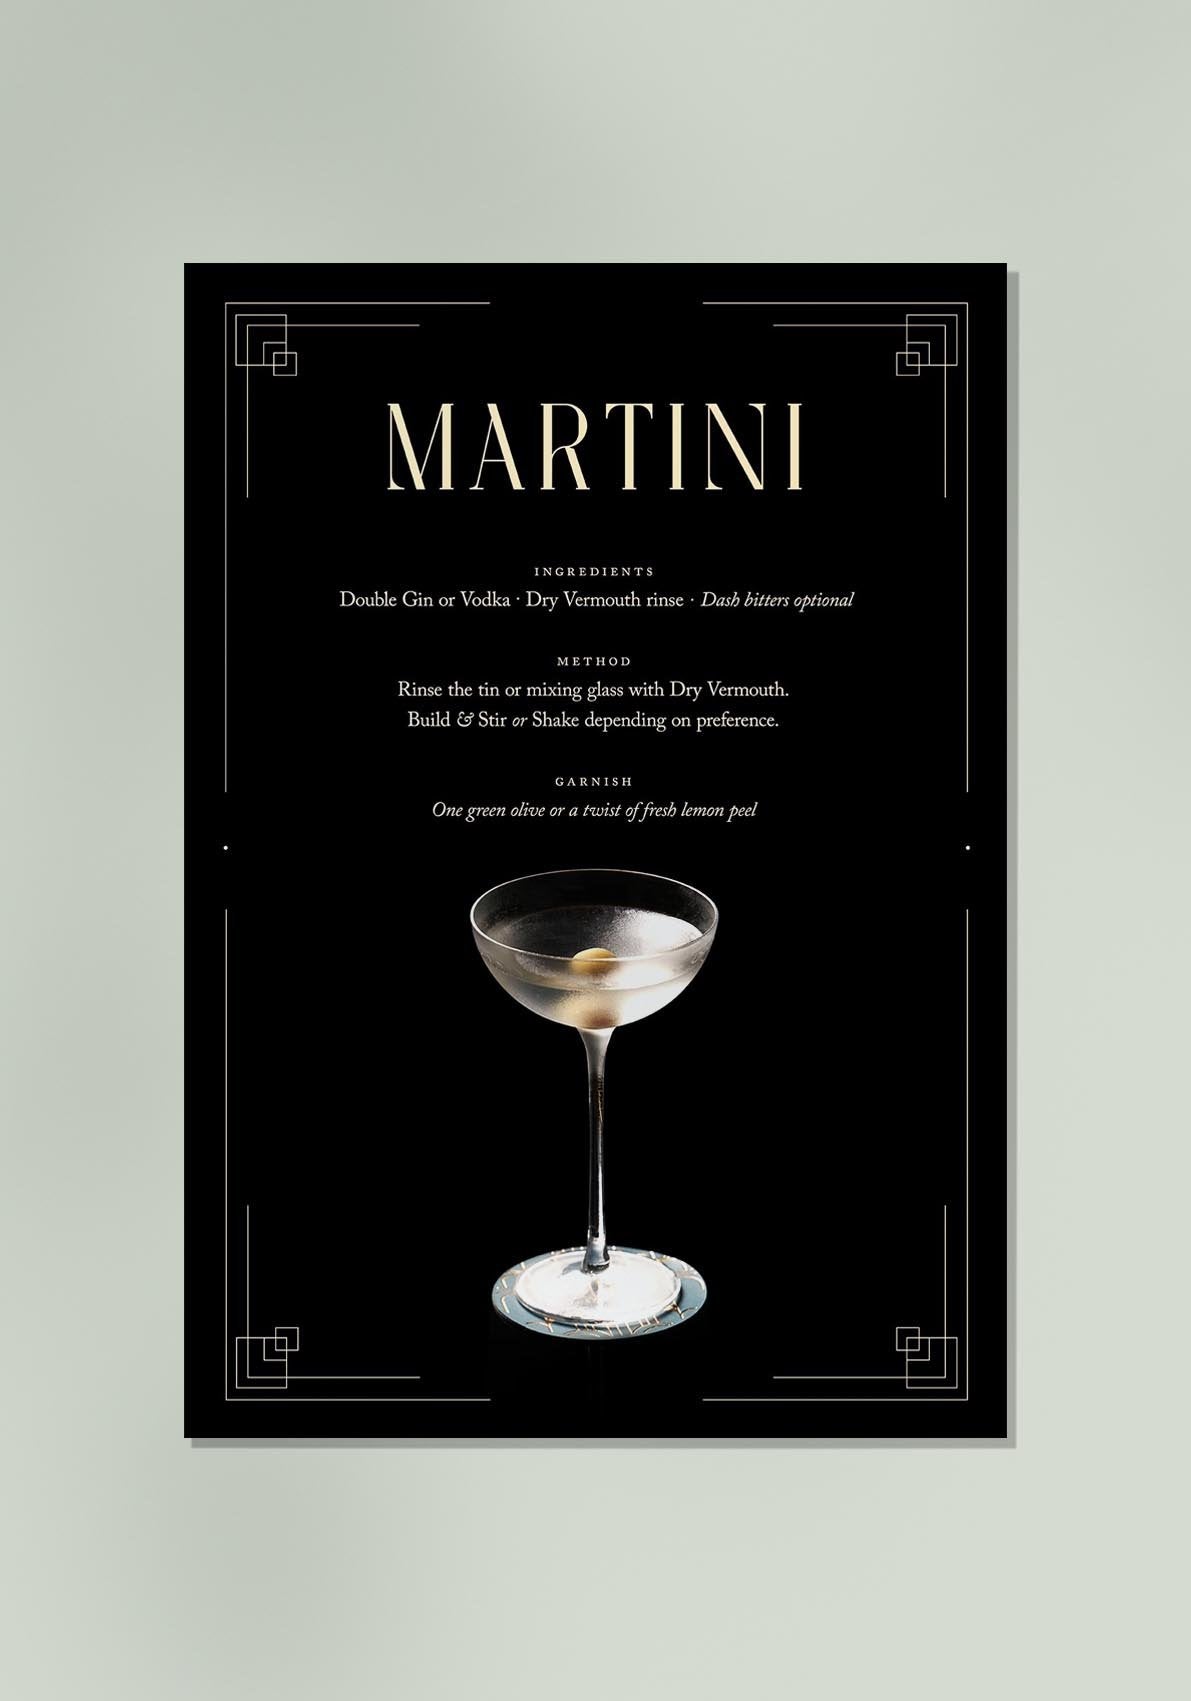 Martini Cocktail Recipe Poster